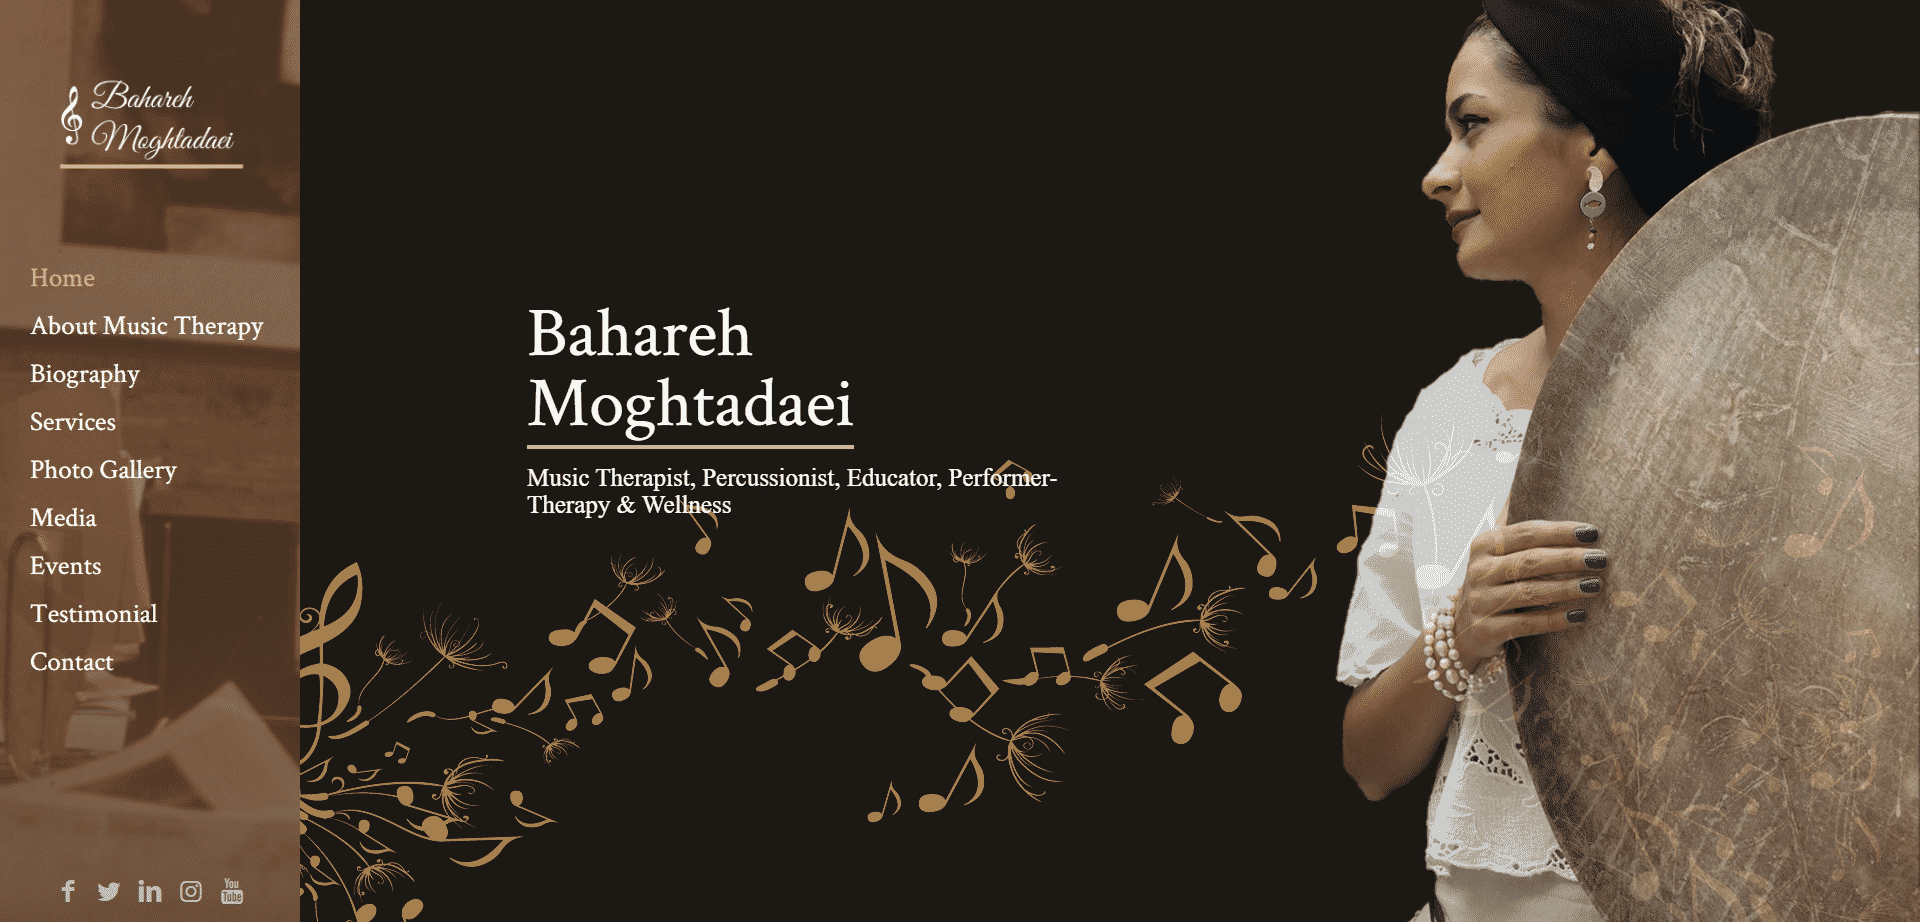 Bahareh Moghtadaei - baharehmt.com